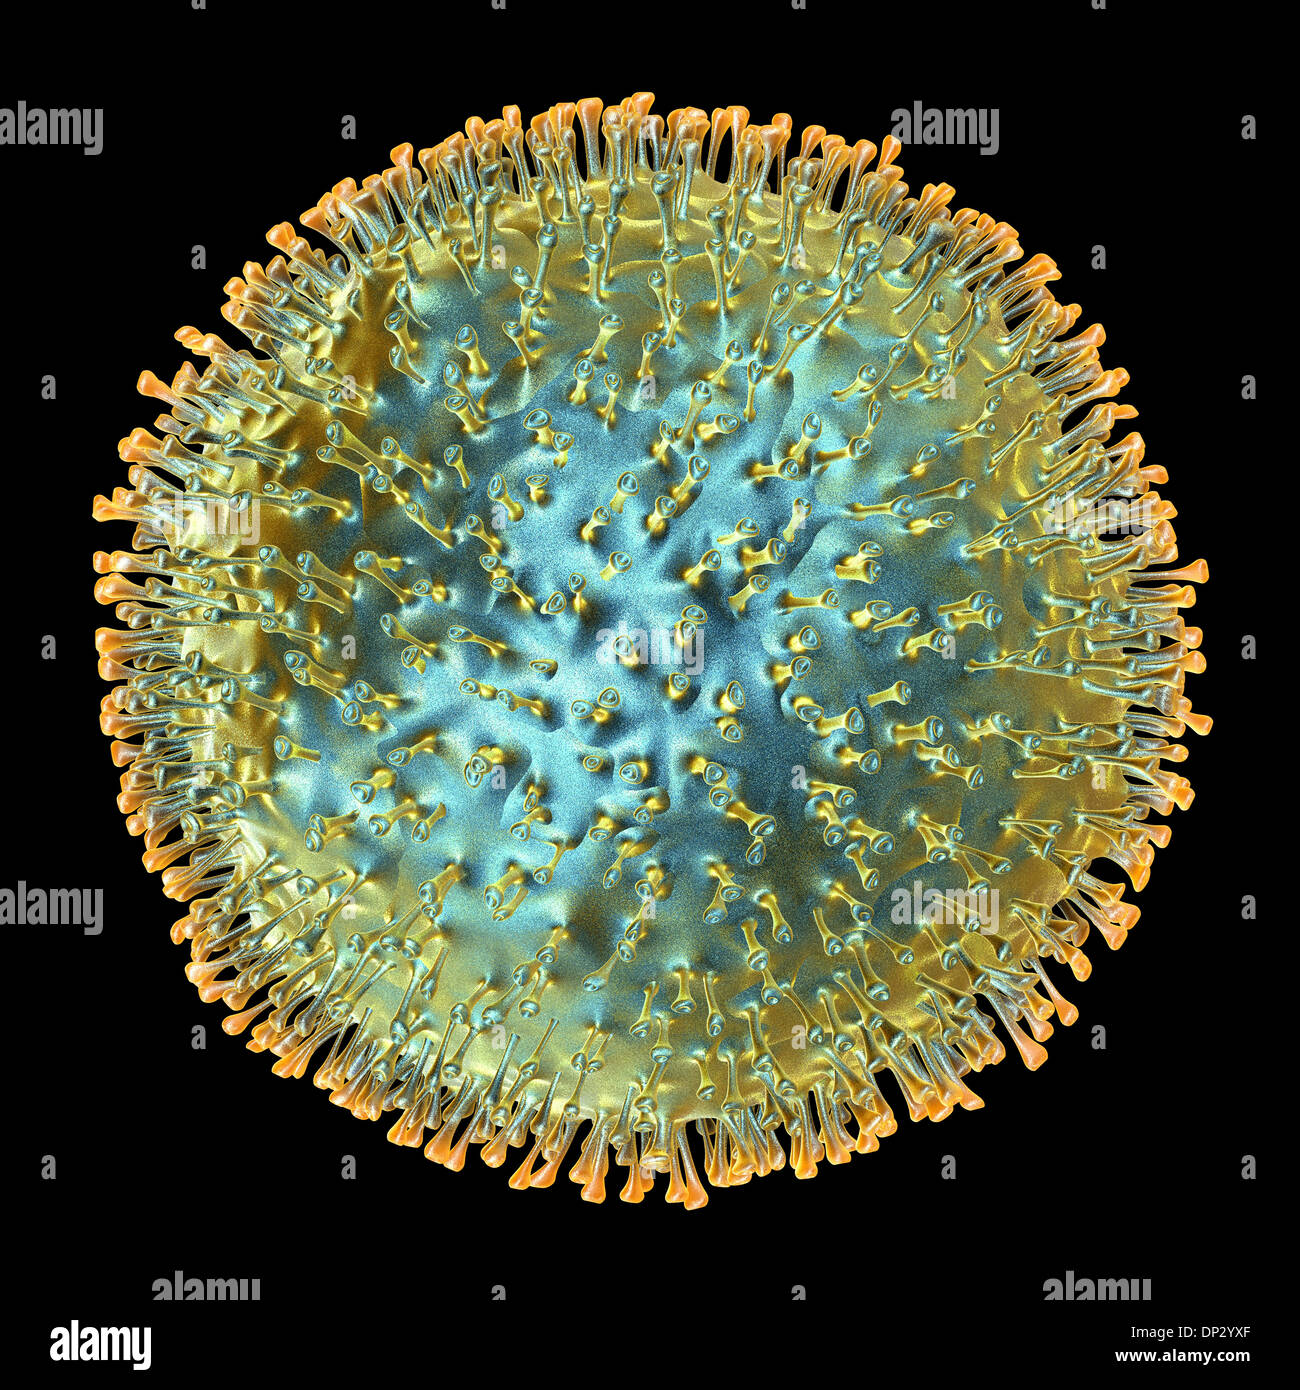 Le virus de l'influenza aviaire, artwork Banque D'Images